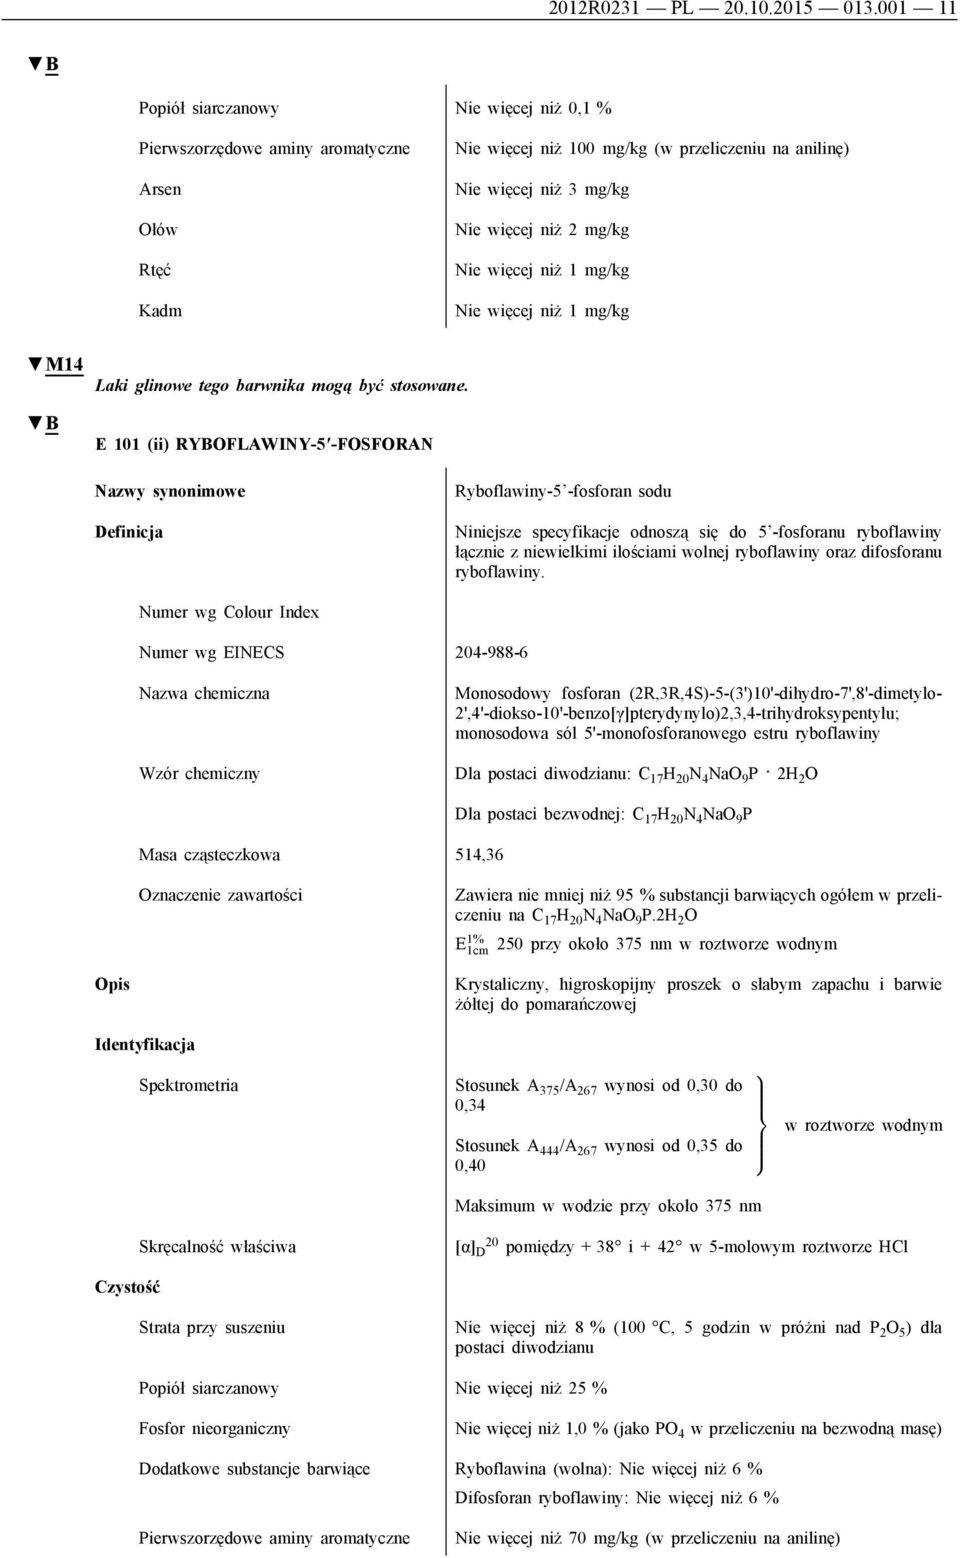 E 101 (ii) RYBOFLAWINY-5 -FOSFORAN Ryboflawiny-5 -fosforan sodu Niniejsze specyfikacje odnoszą się do 5 -fosforanu ryboflawiny łącznie z niewielkimi ilościami wolnej ryboflawiny oraz difosforanu